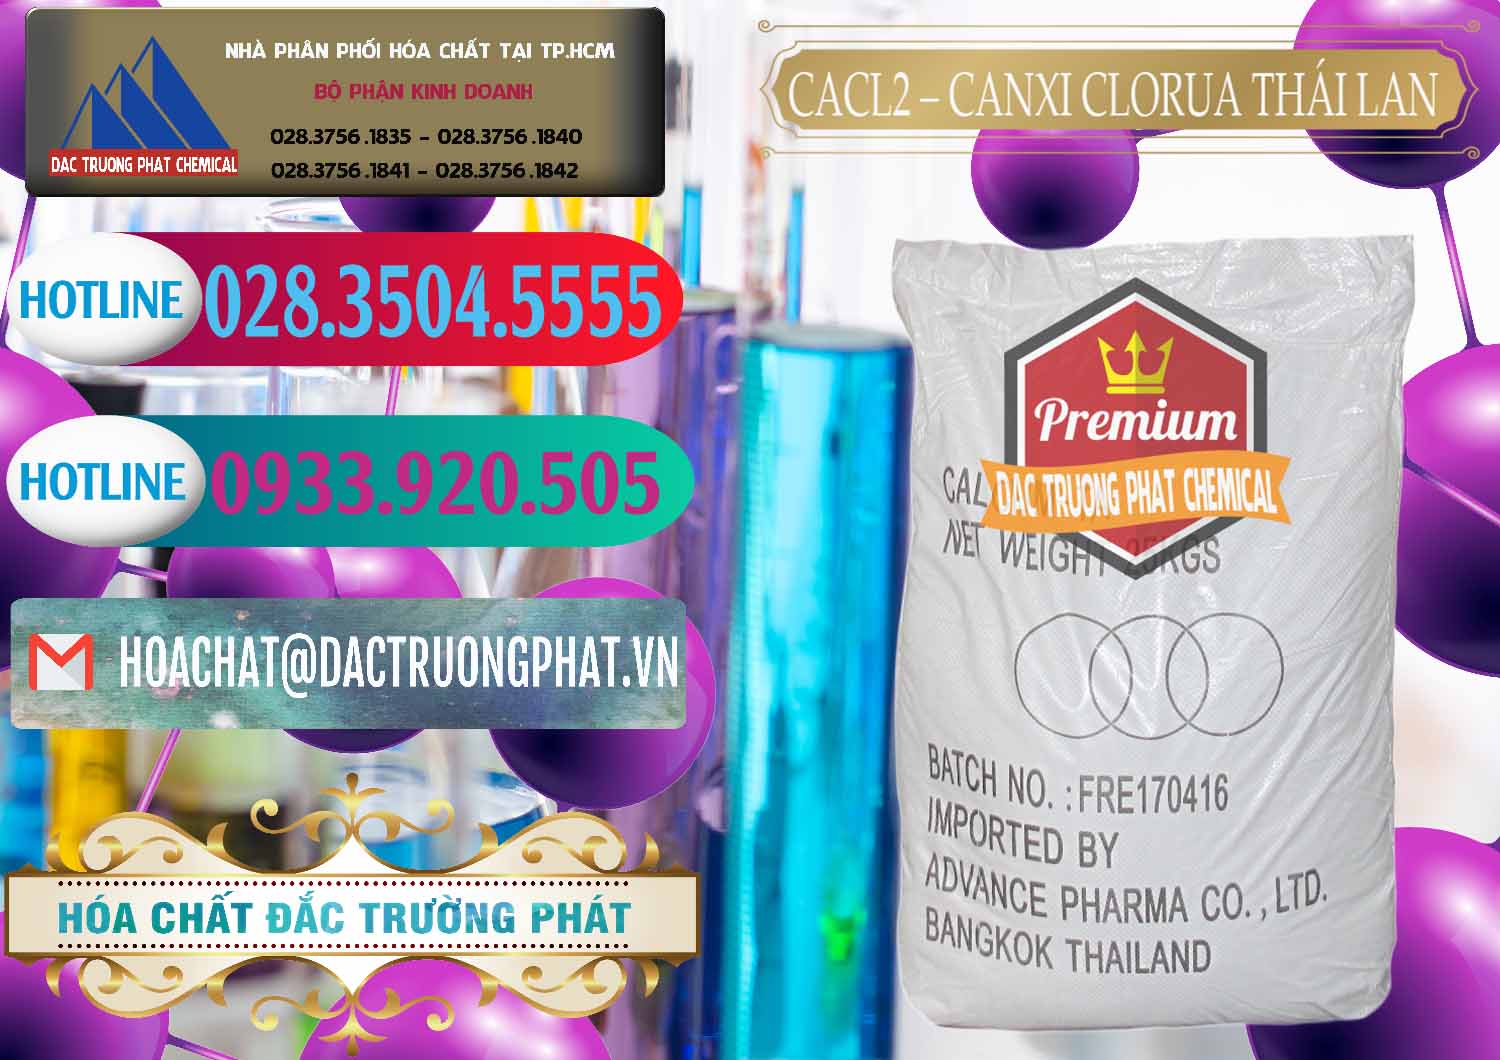 Công ty chuyên bán và phân phối CaCl2 – Canxi Clorua 96% Thái Lan - 0042 - Công ty phân phối & cung ứng hóa chất tại TP.HCM - truongphat.vn